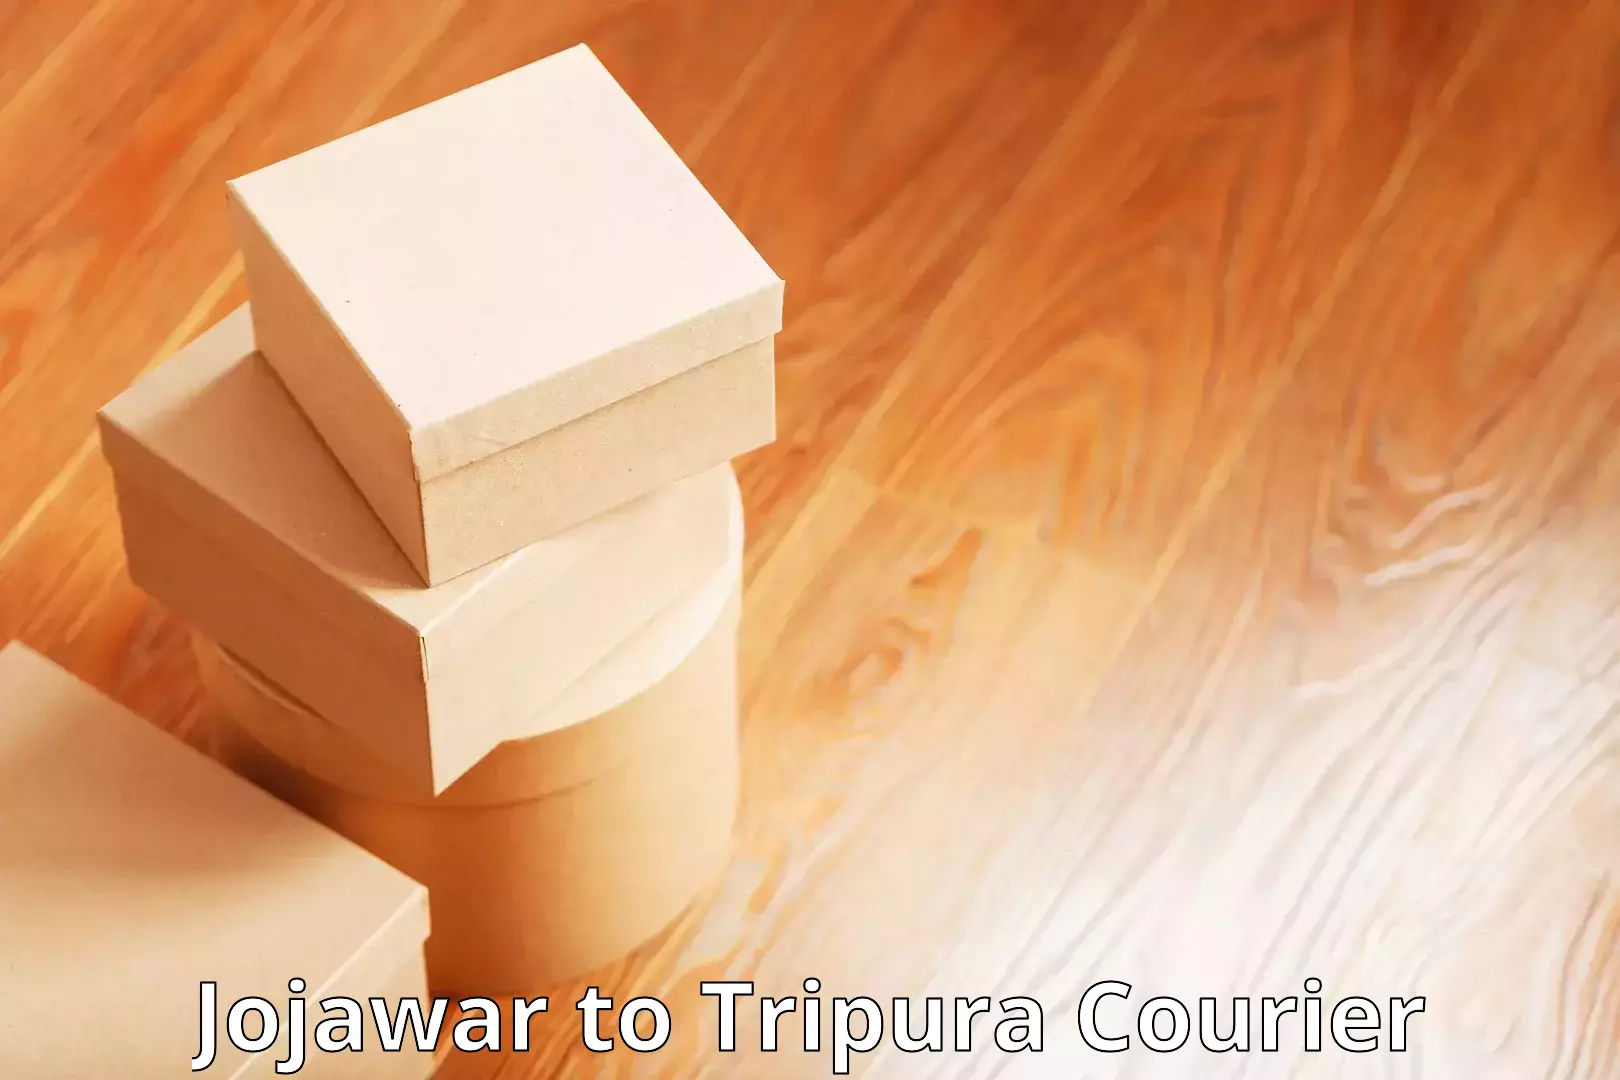 Discounted shipping Jojawar to Tripura